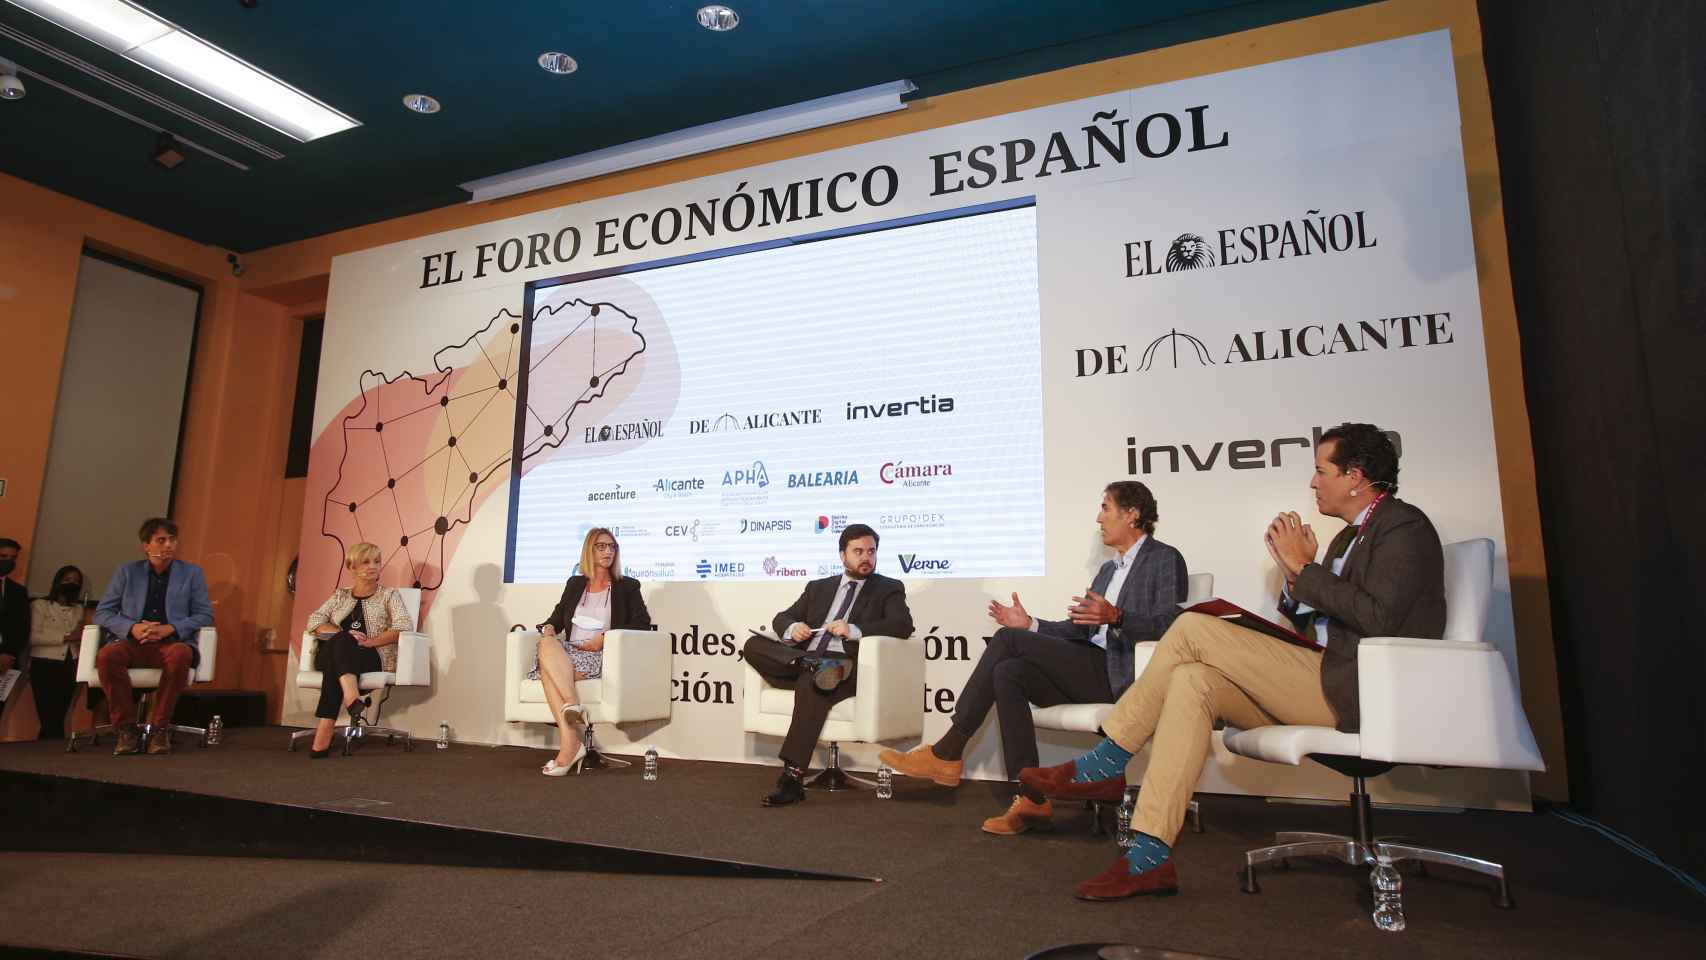 Los ponentes en la mesa han analizado la situación del tejido empresarial en Alicante.